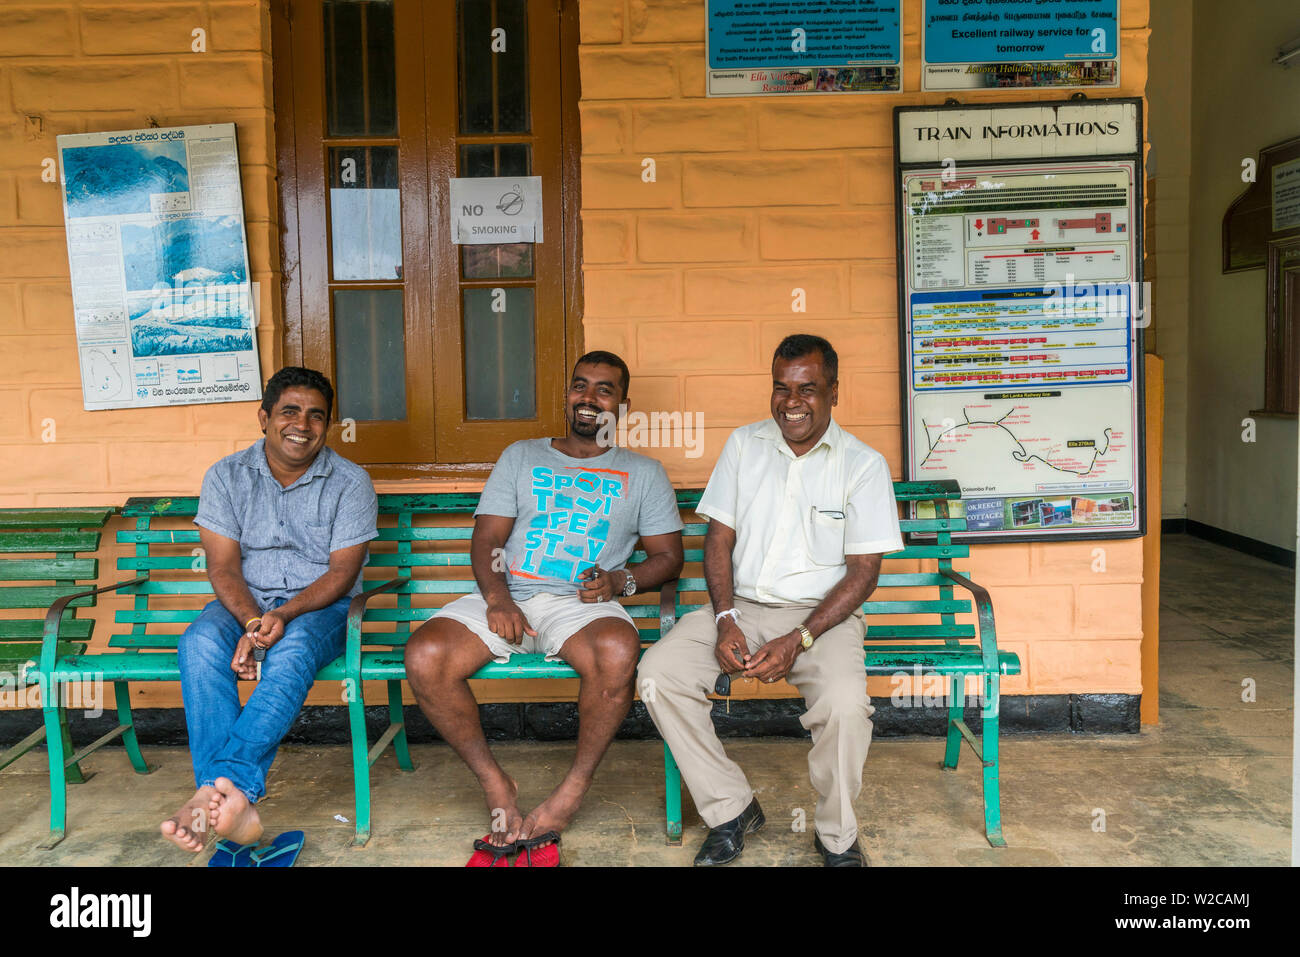 Tres lugareños sonriente esperando en ella estación de tren, Southern Highlands, Sri Lanka Foto de stock